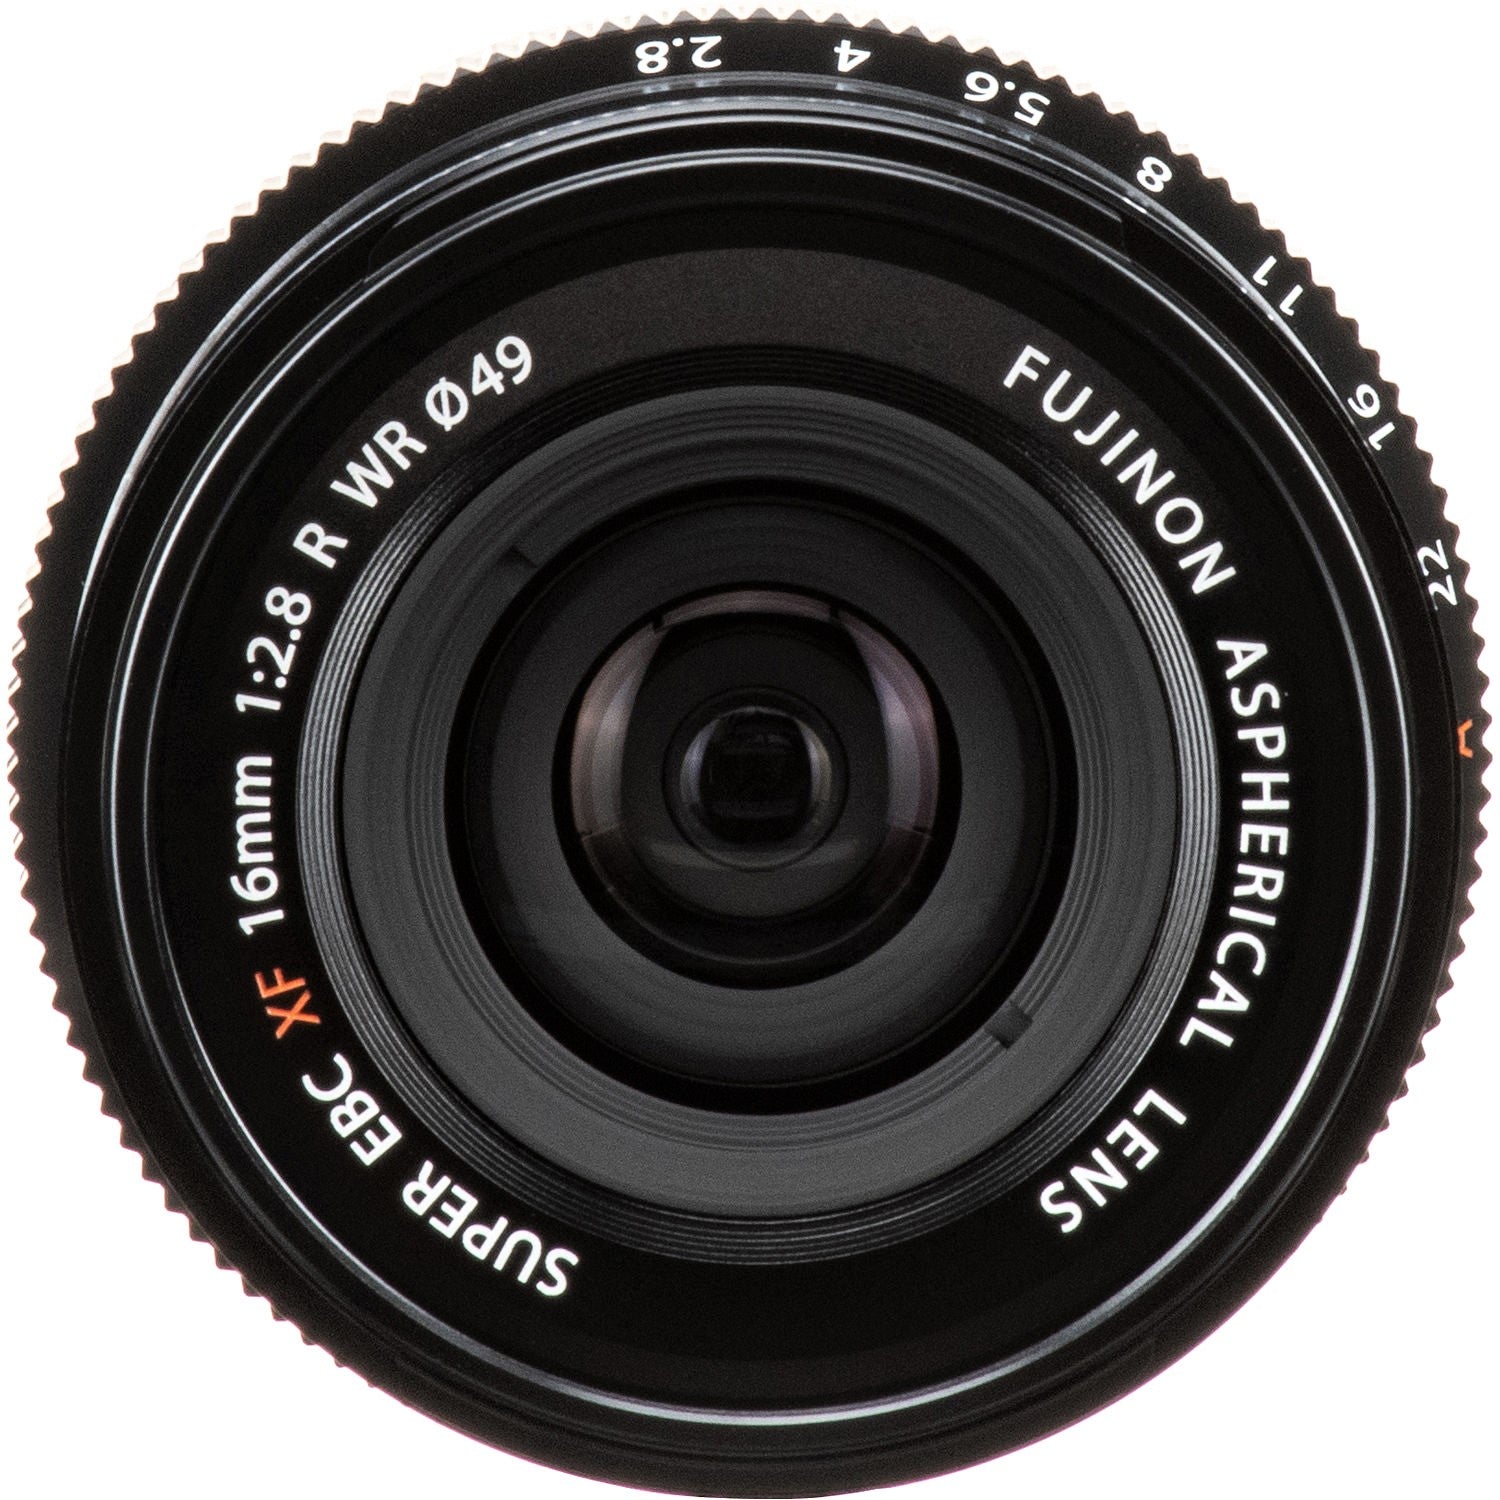 FUJIFILM XF 16mm f/2.8 R WR Lens (Black) - Front View